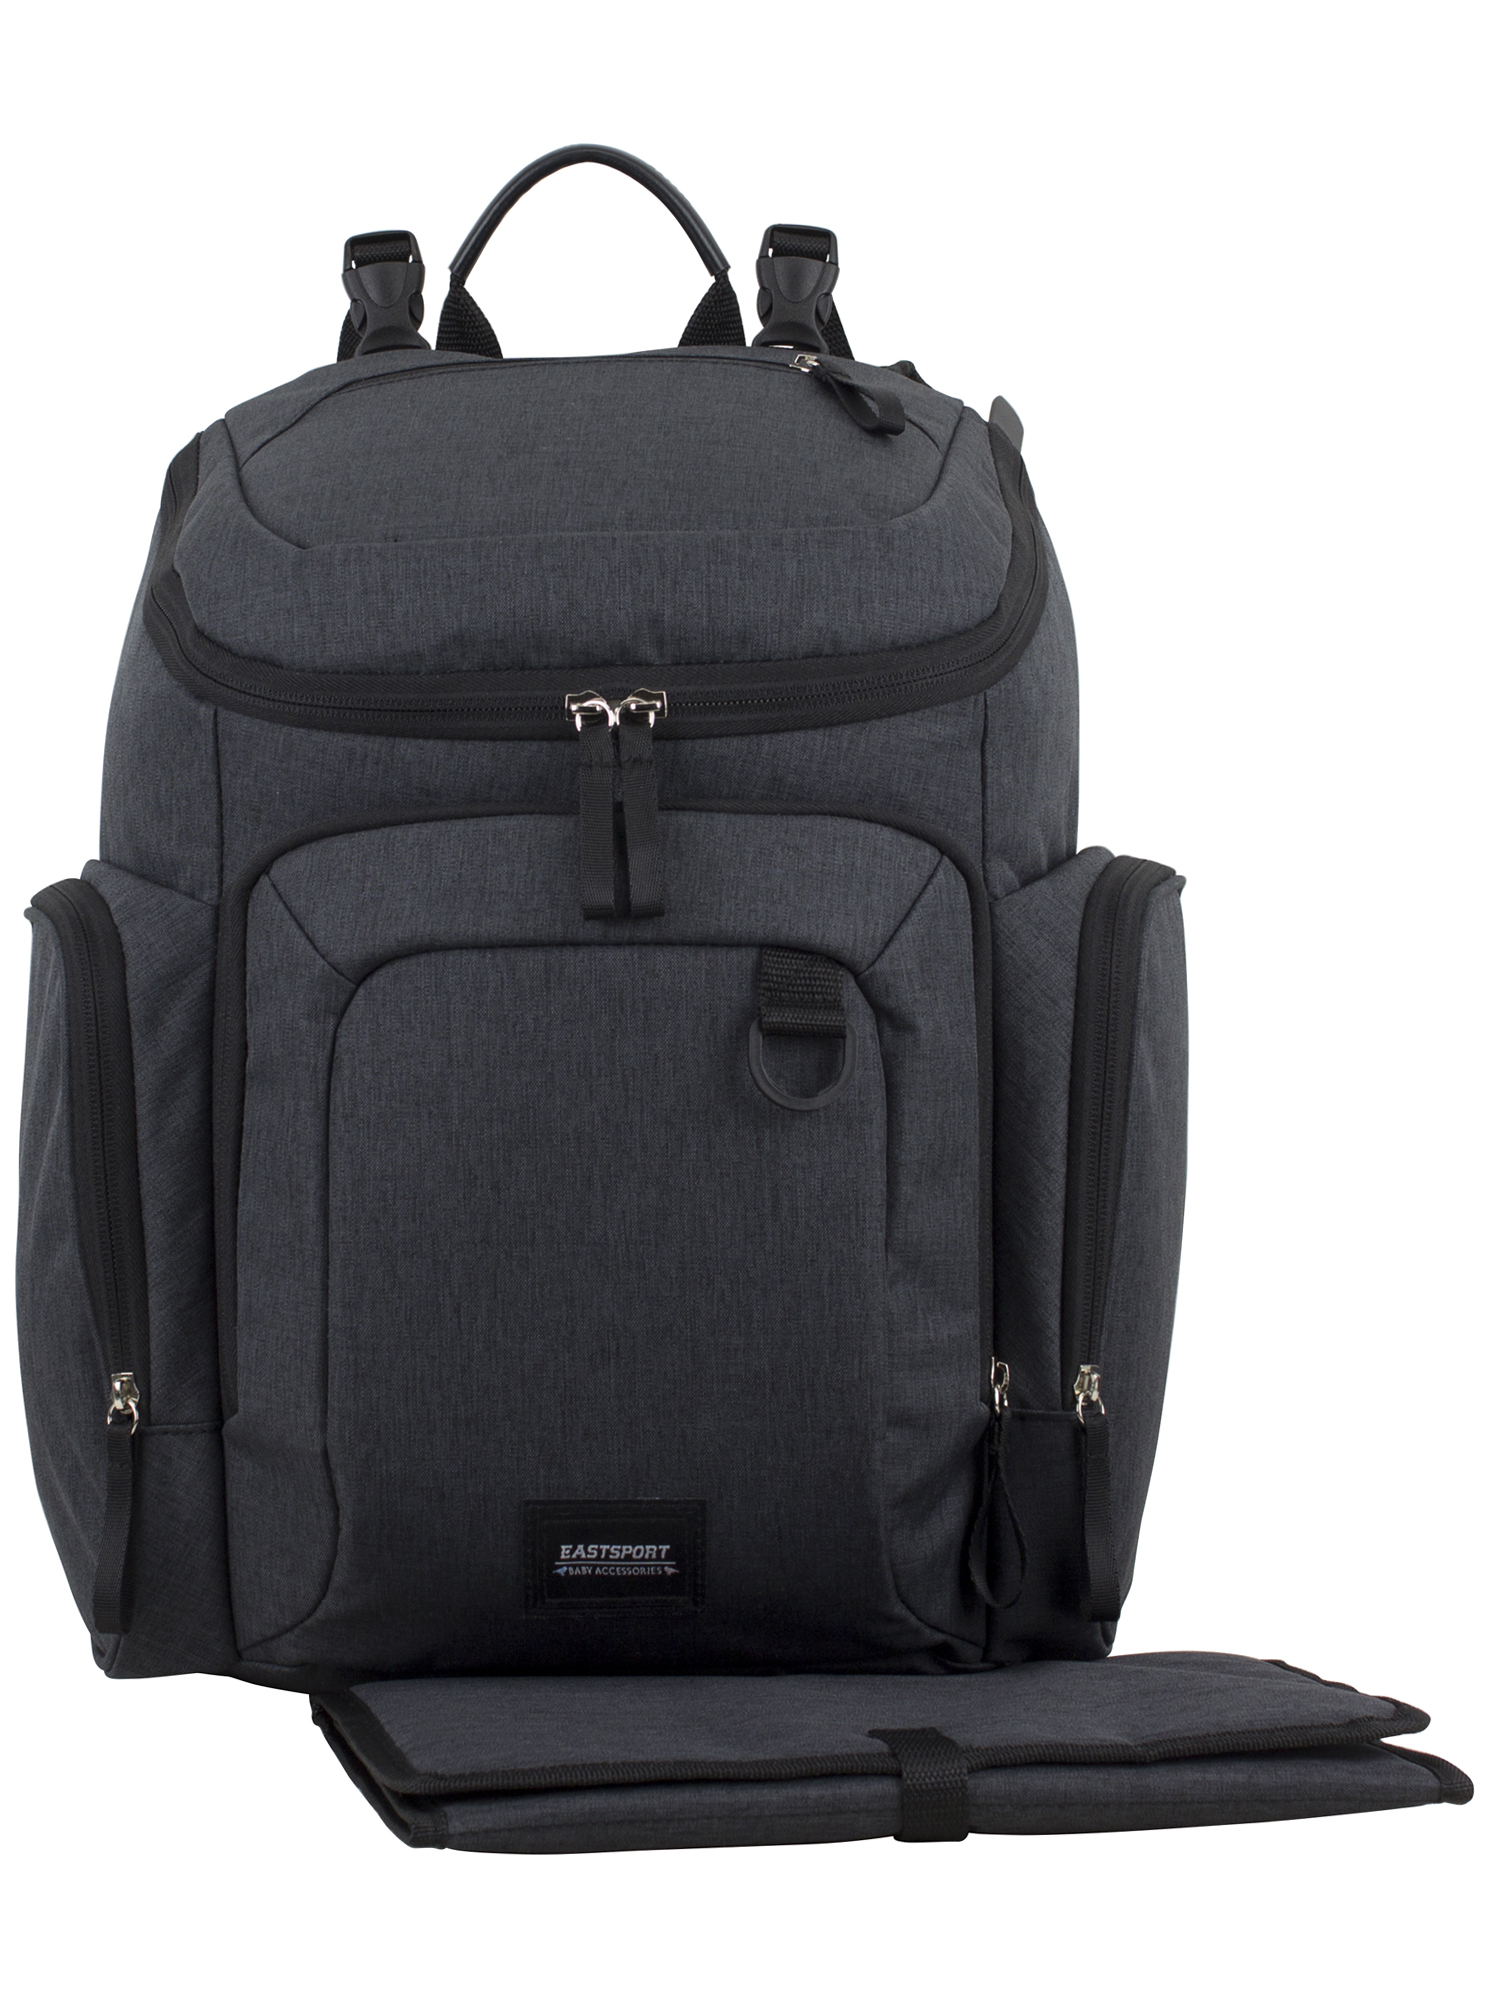 Eastsport Wooster St. Backpack Diaper Bag with Adjustable Shoulder Straps, Bonus Changing Pad, Stroller Straps and Insulated Zipper Pockets, Dark Grey - image 1 of 11